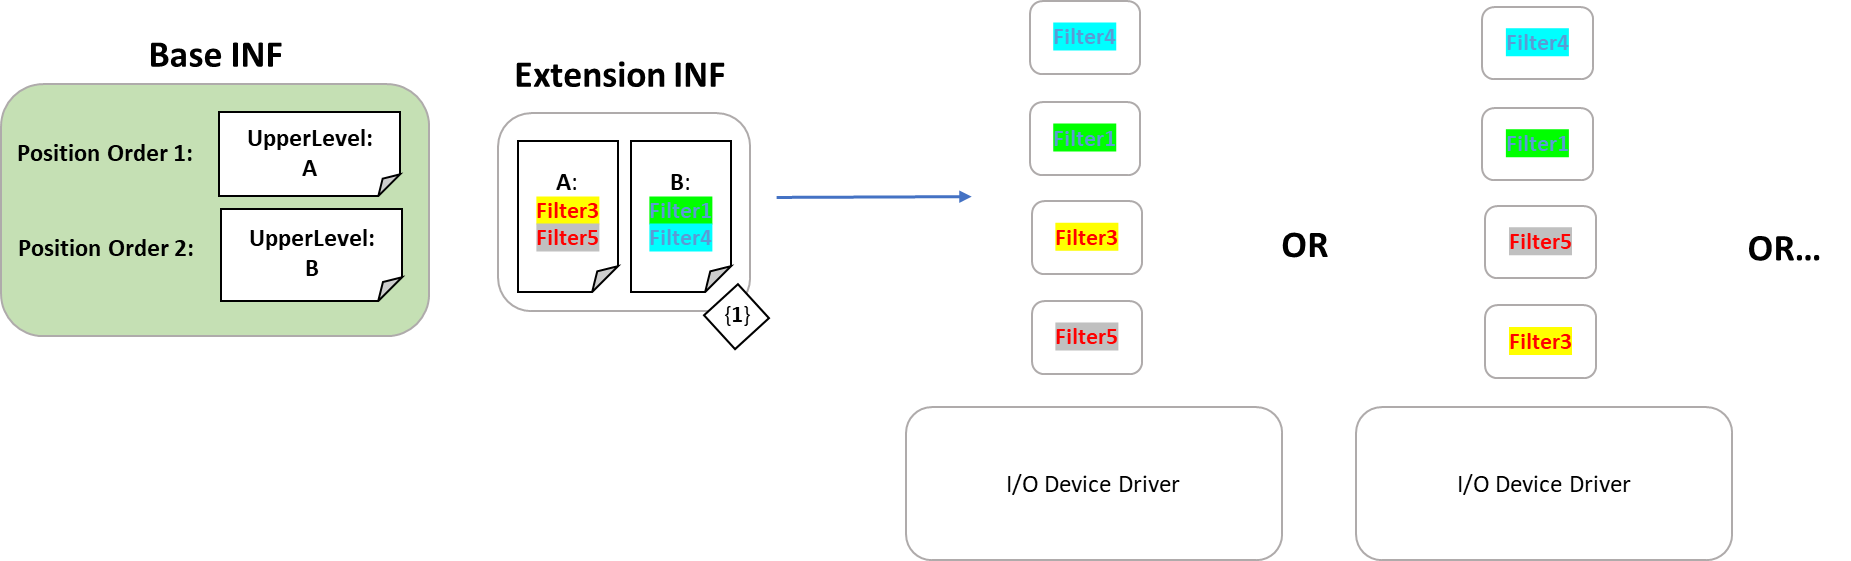 裝置驅動程式的安裝顯示為裝置堆疊順序，可合併篩選驅動程式清單，同時遵守所需的位置和順序。